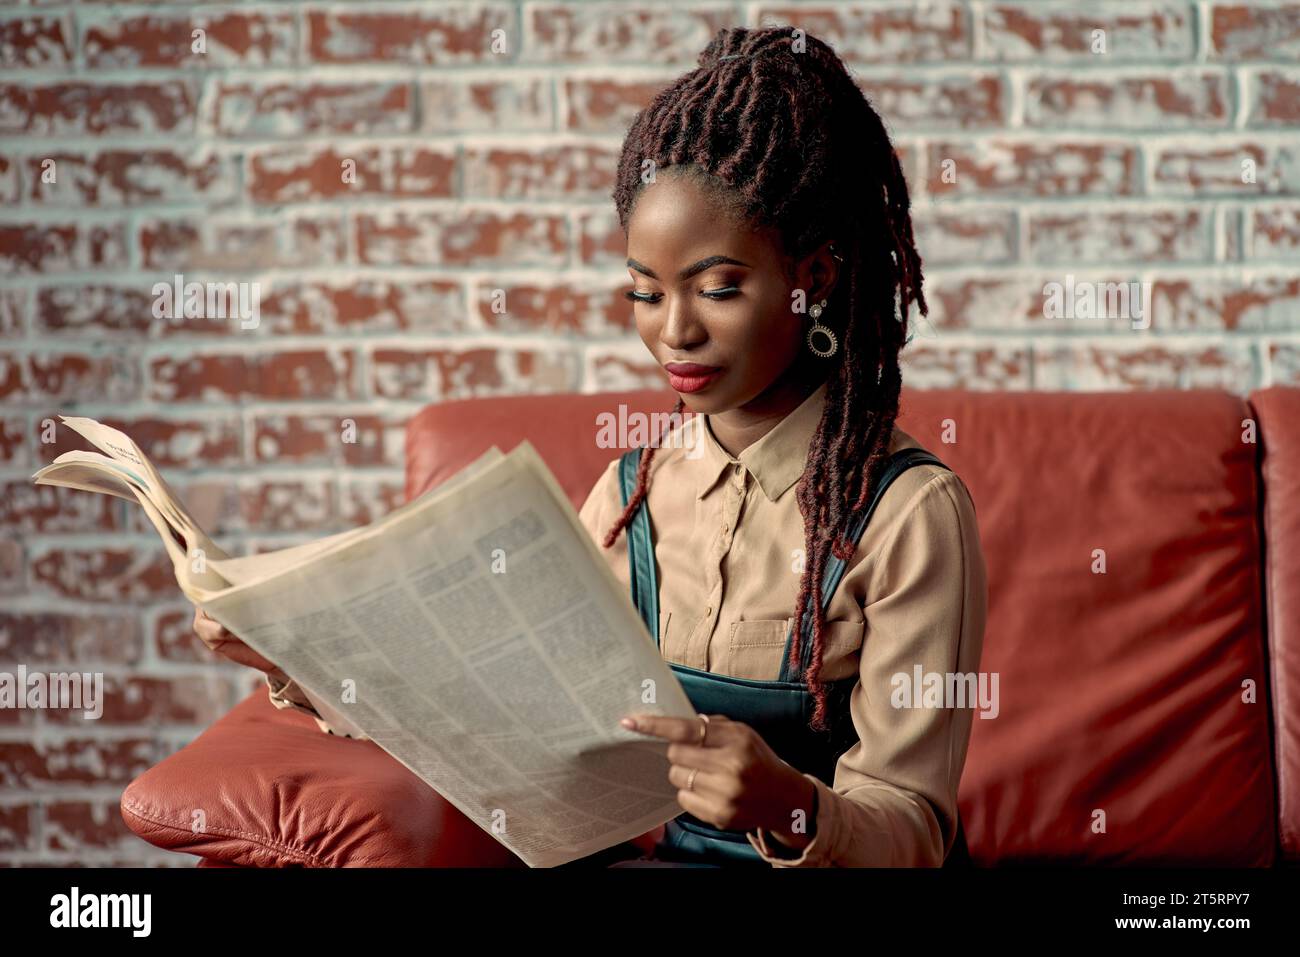 Wunderschöne schwarze Frau mit Dreadlocks, die sich darauf konzentrierte, eine Zeitung zu lesen, während sie auf einer roten Ledercouch vor einer roten Ziegelwand mit Kopierraum saß. Y Stockfoto